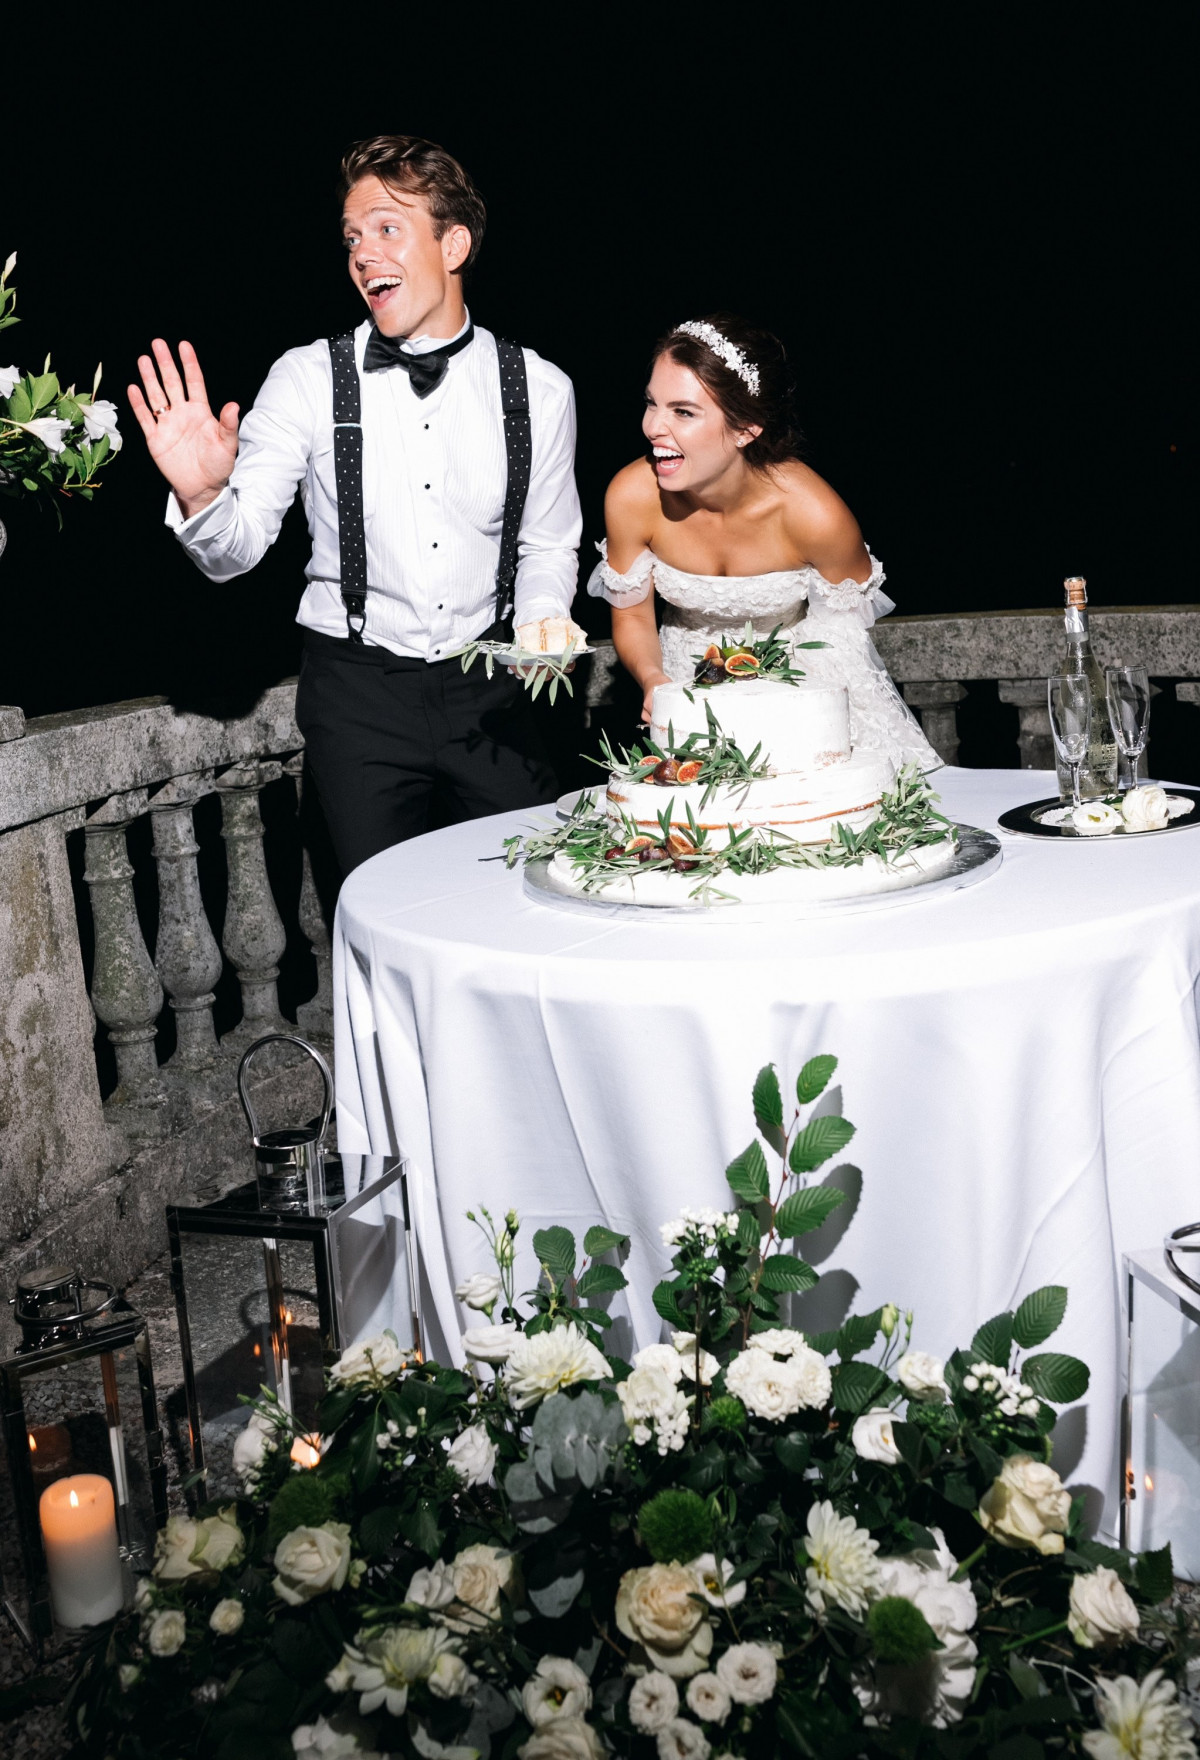 Доклад: Современные свадебные традиции и обычаи